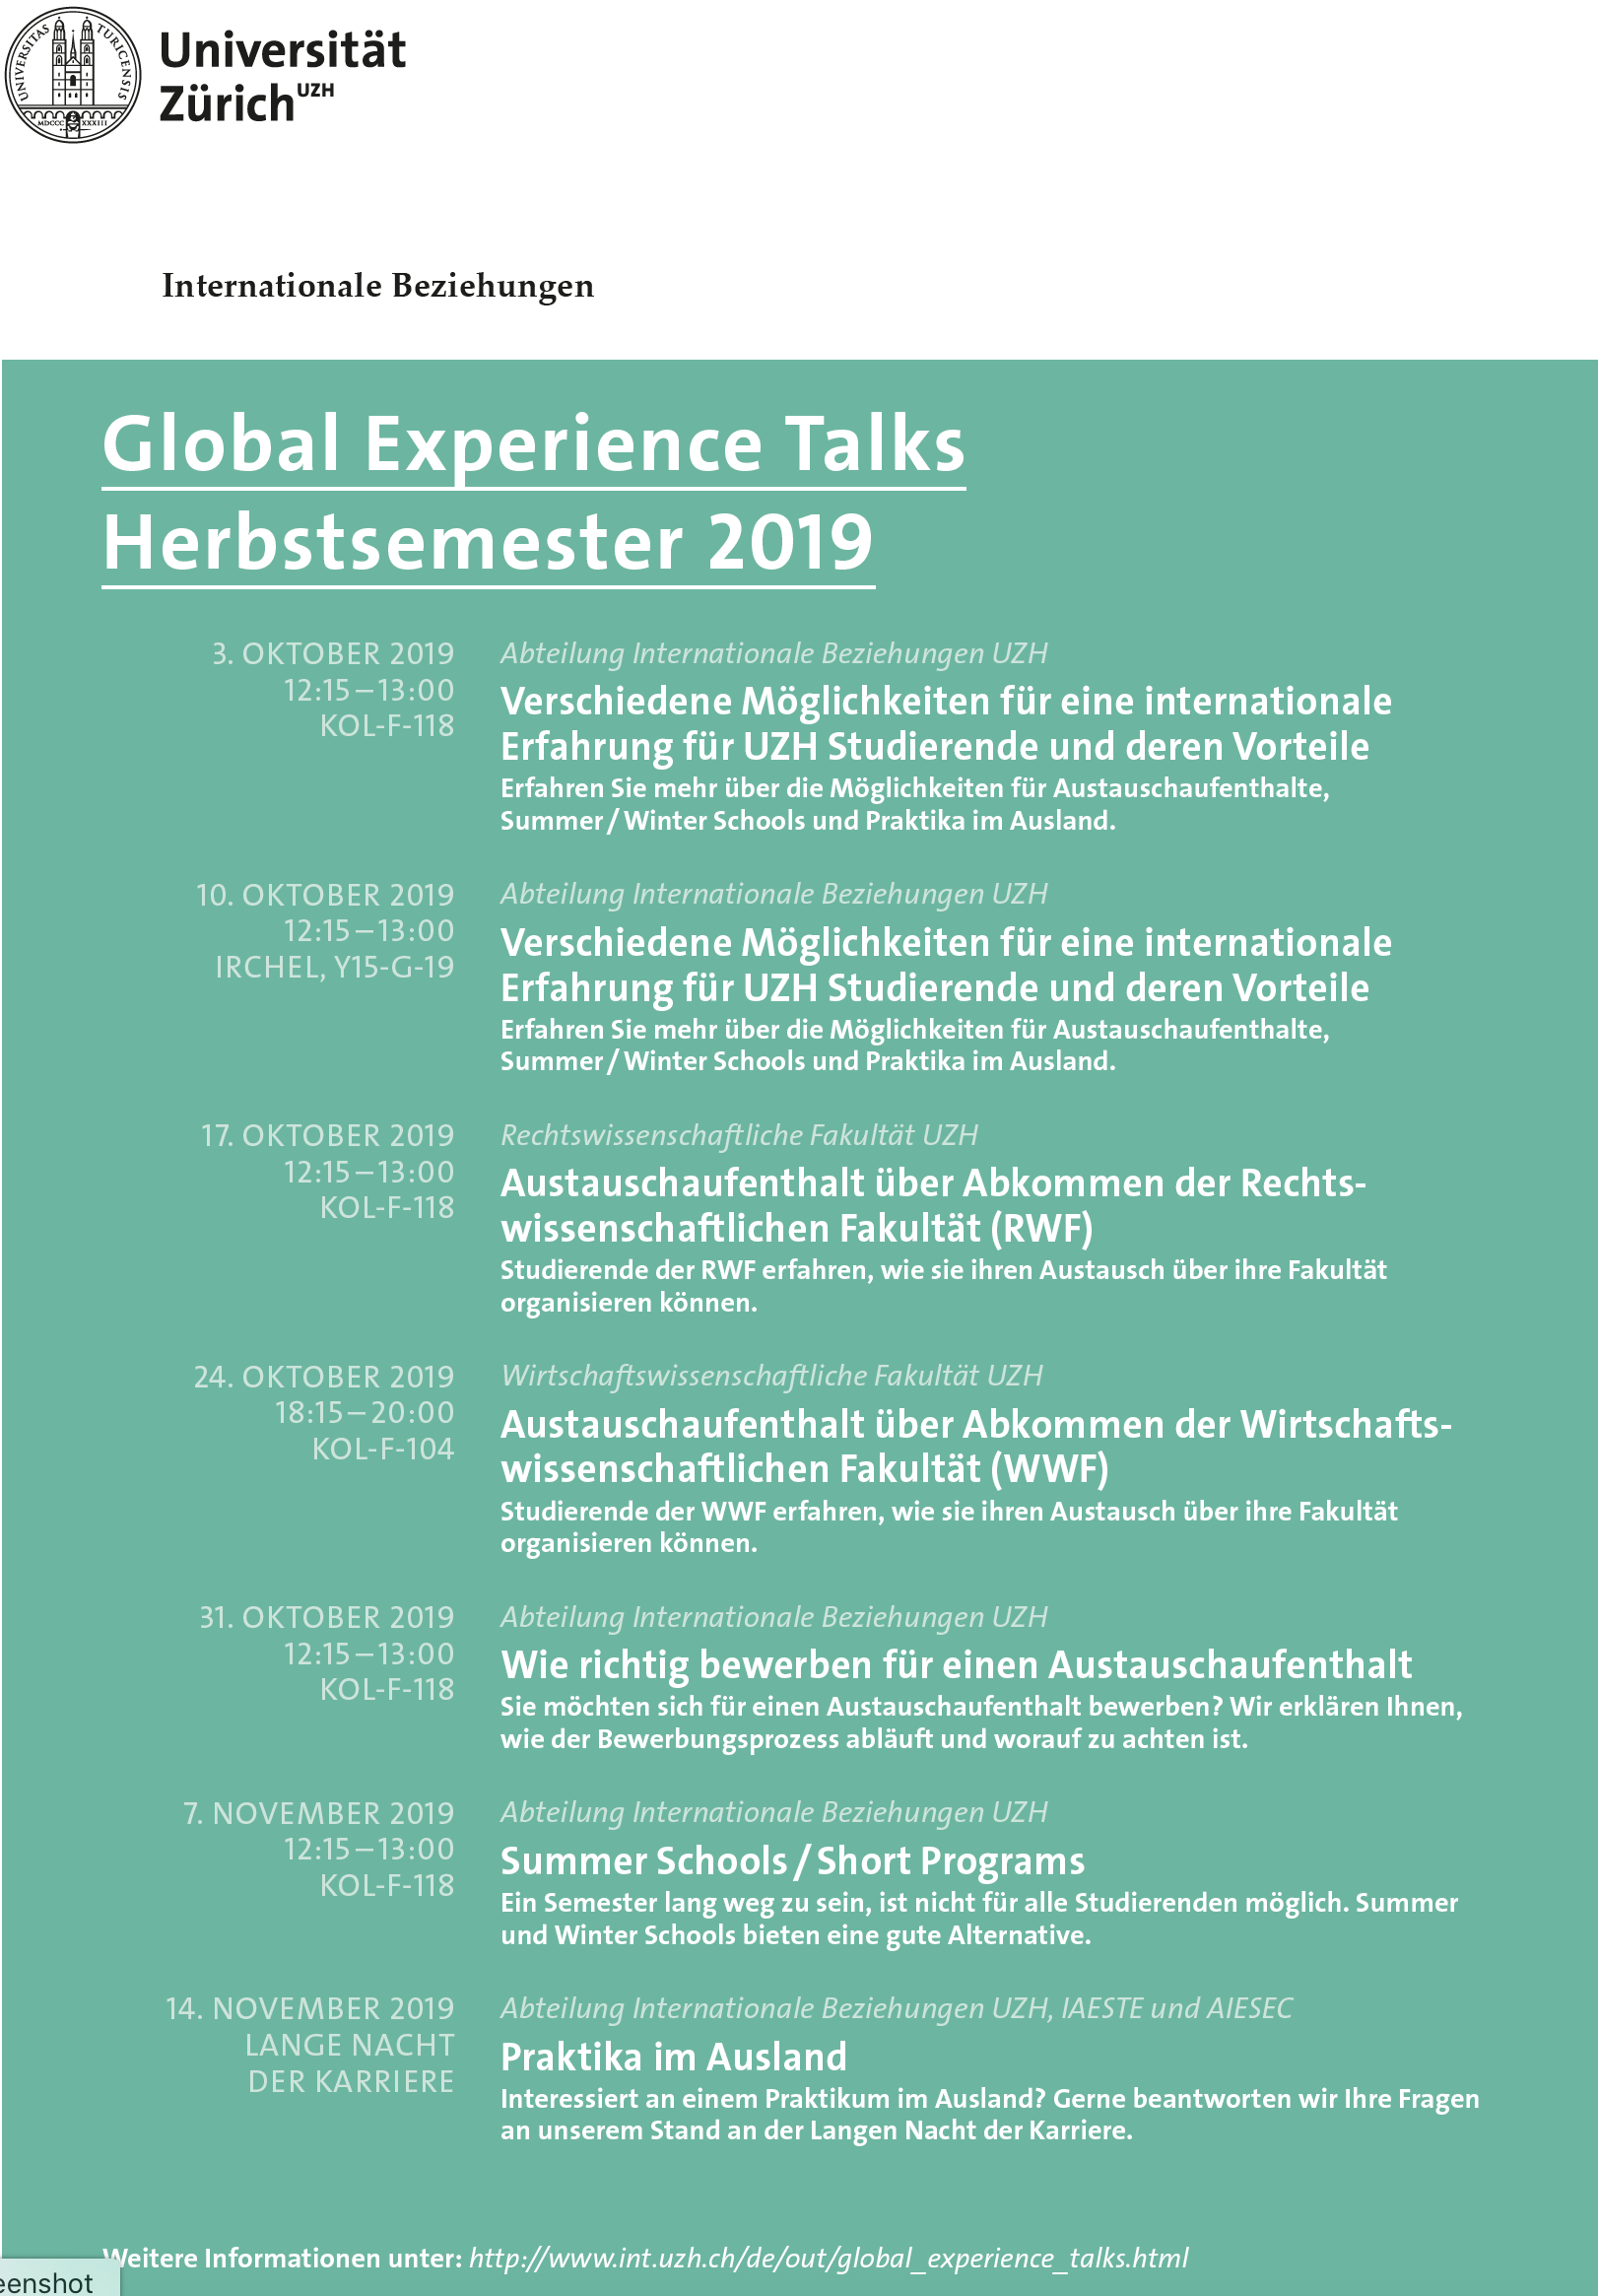 Global Experience Talks HS 2019